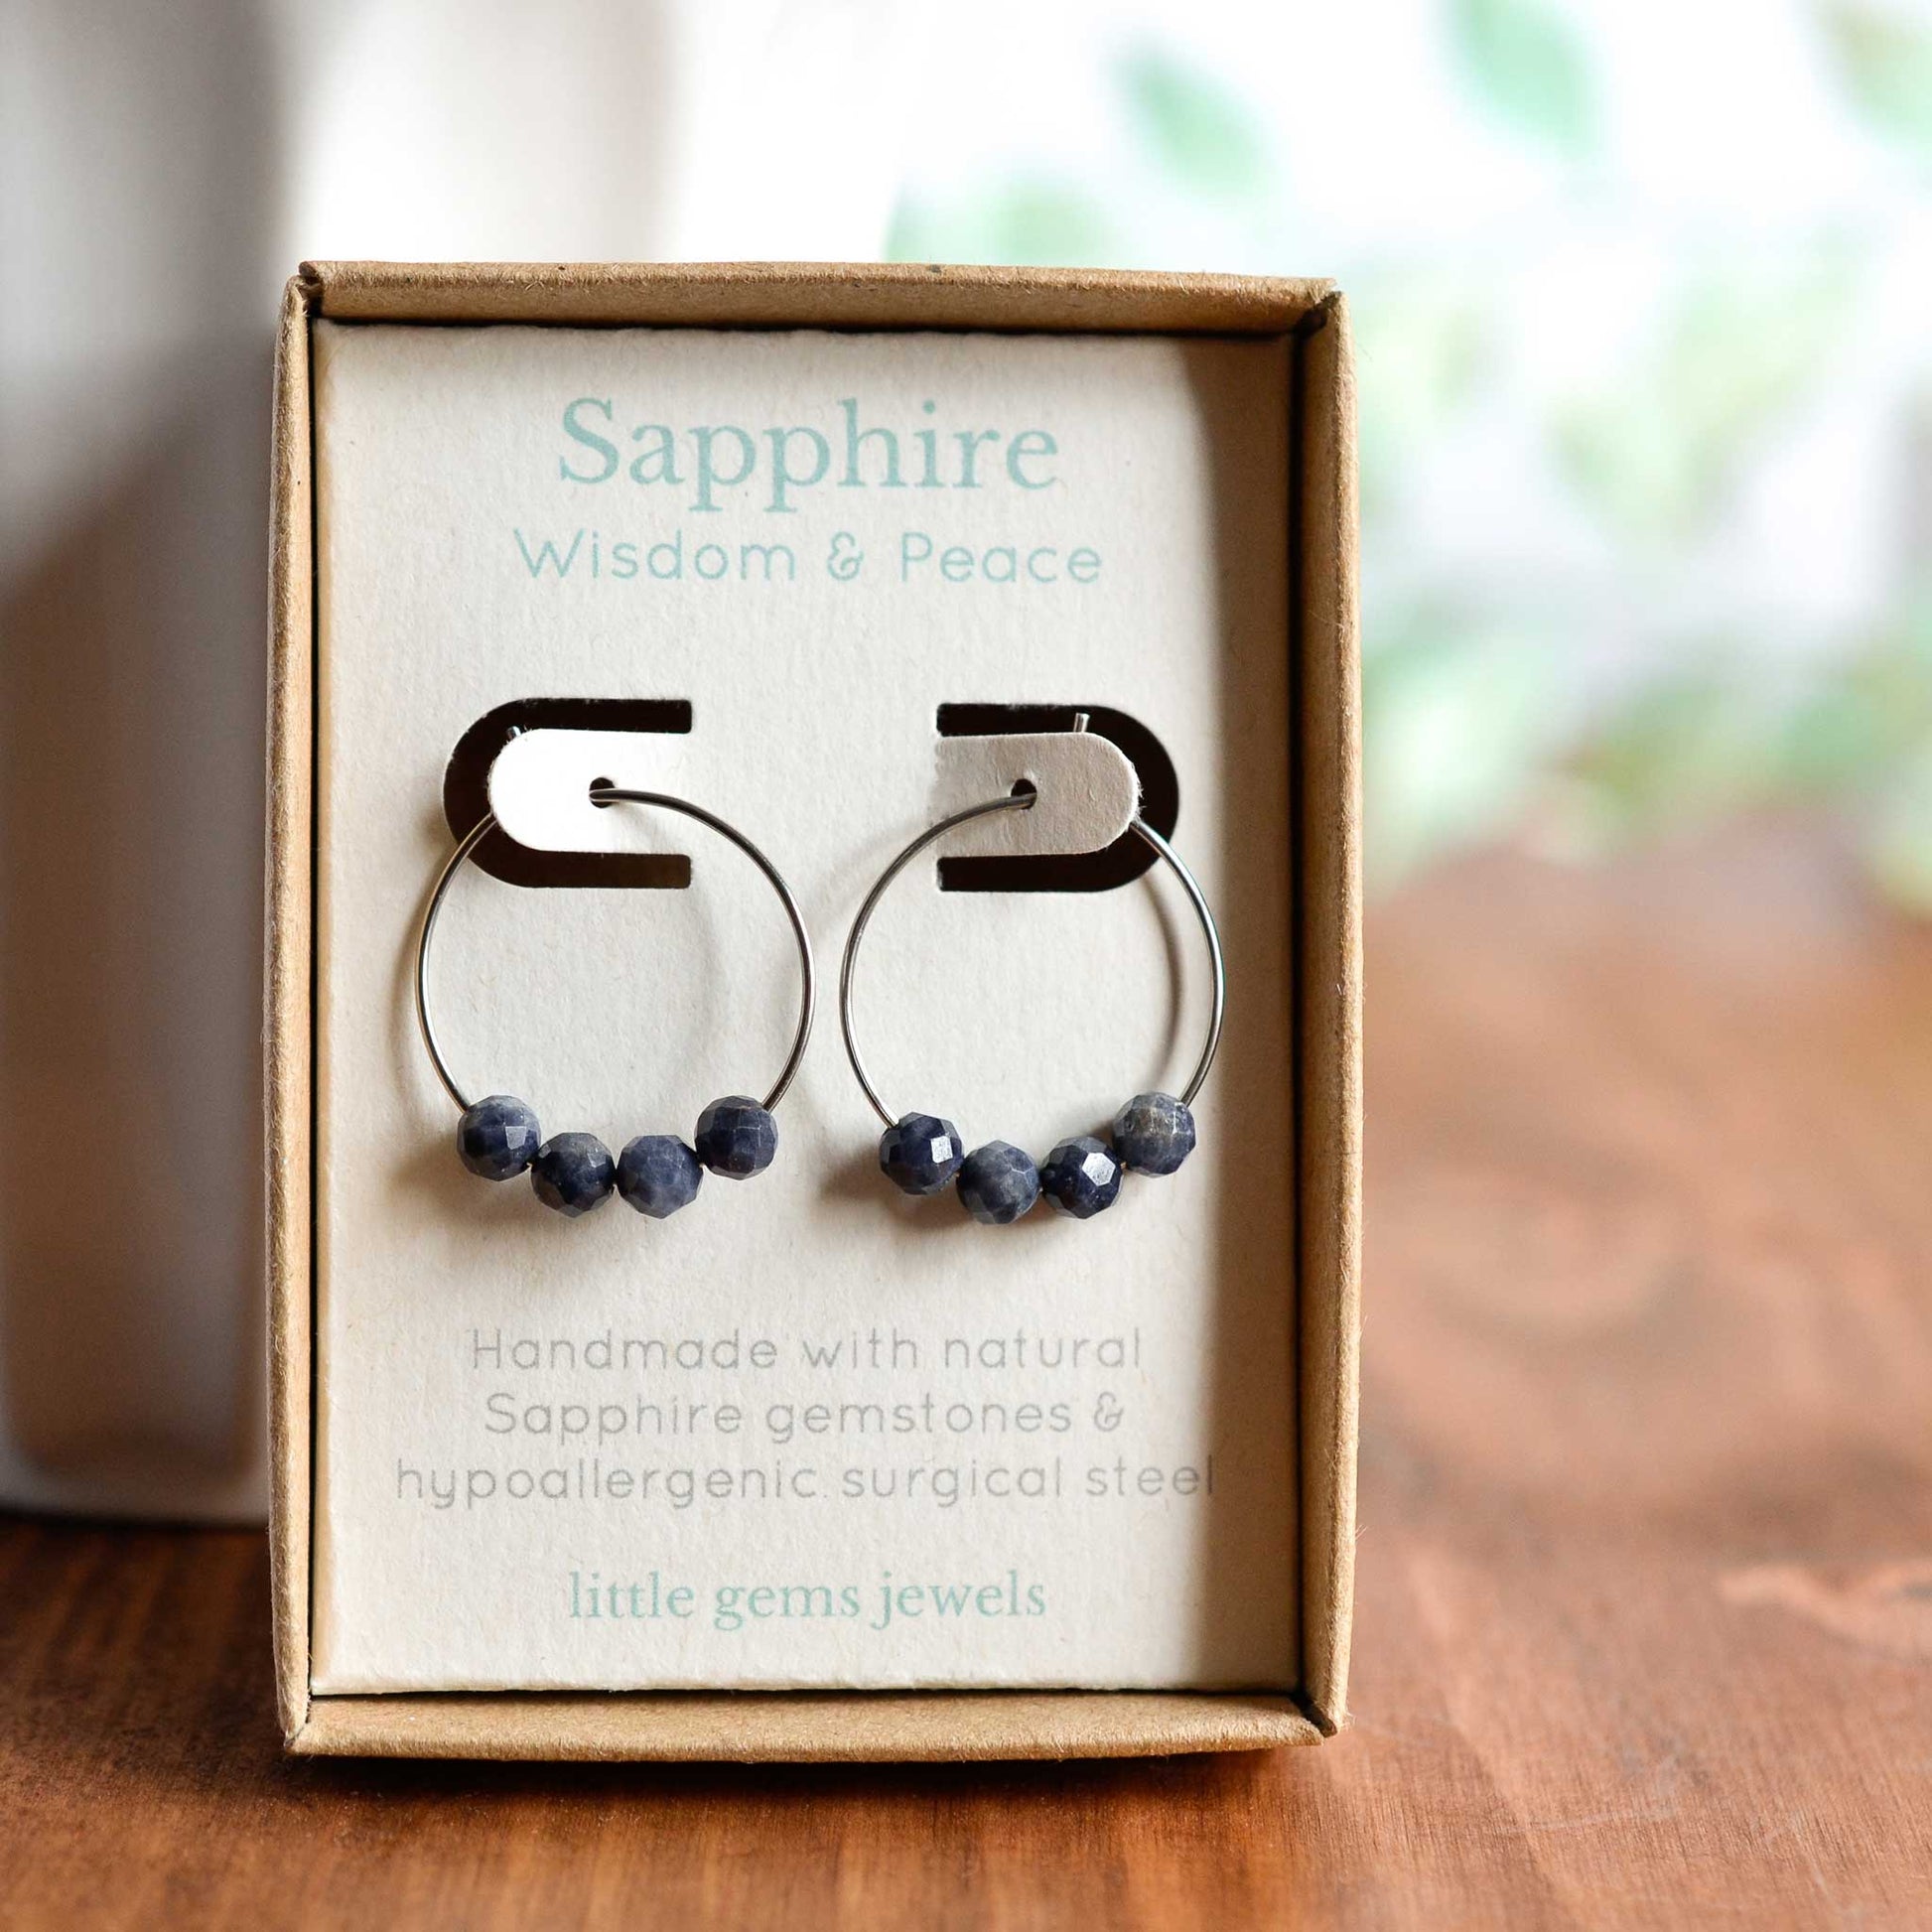 Sapphire gemstone hoop earrings in gift box